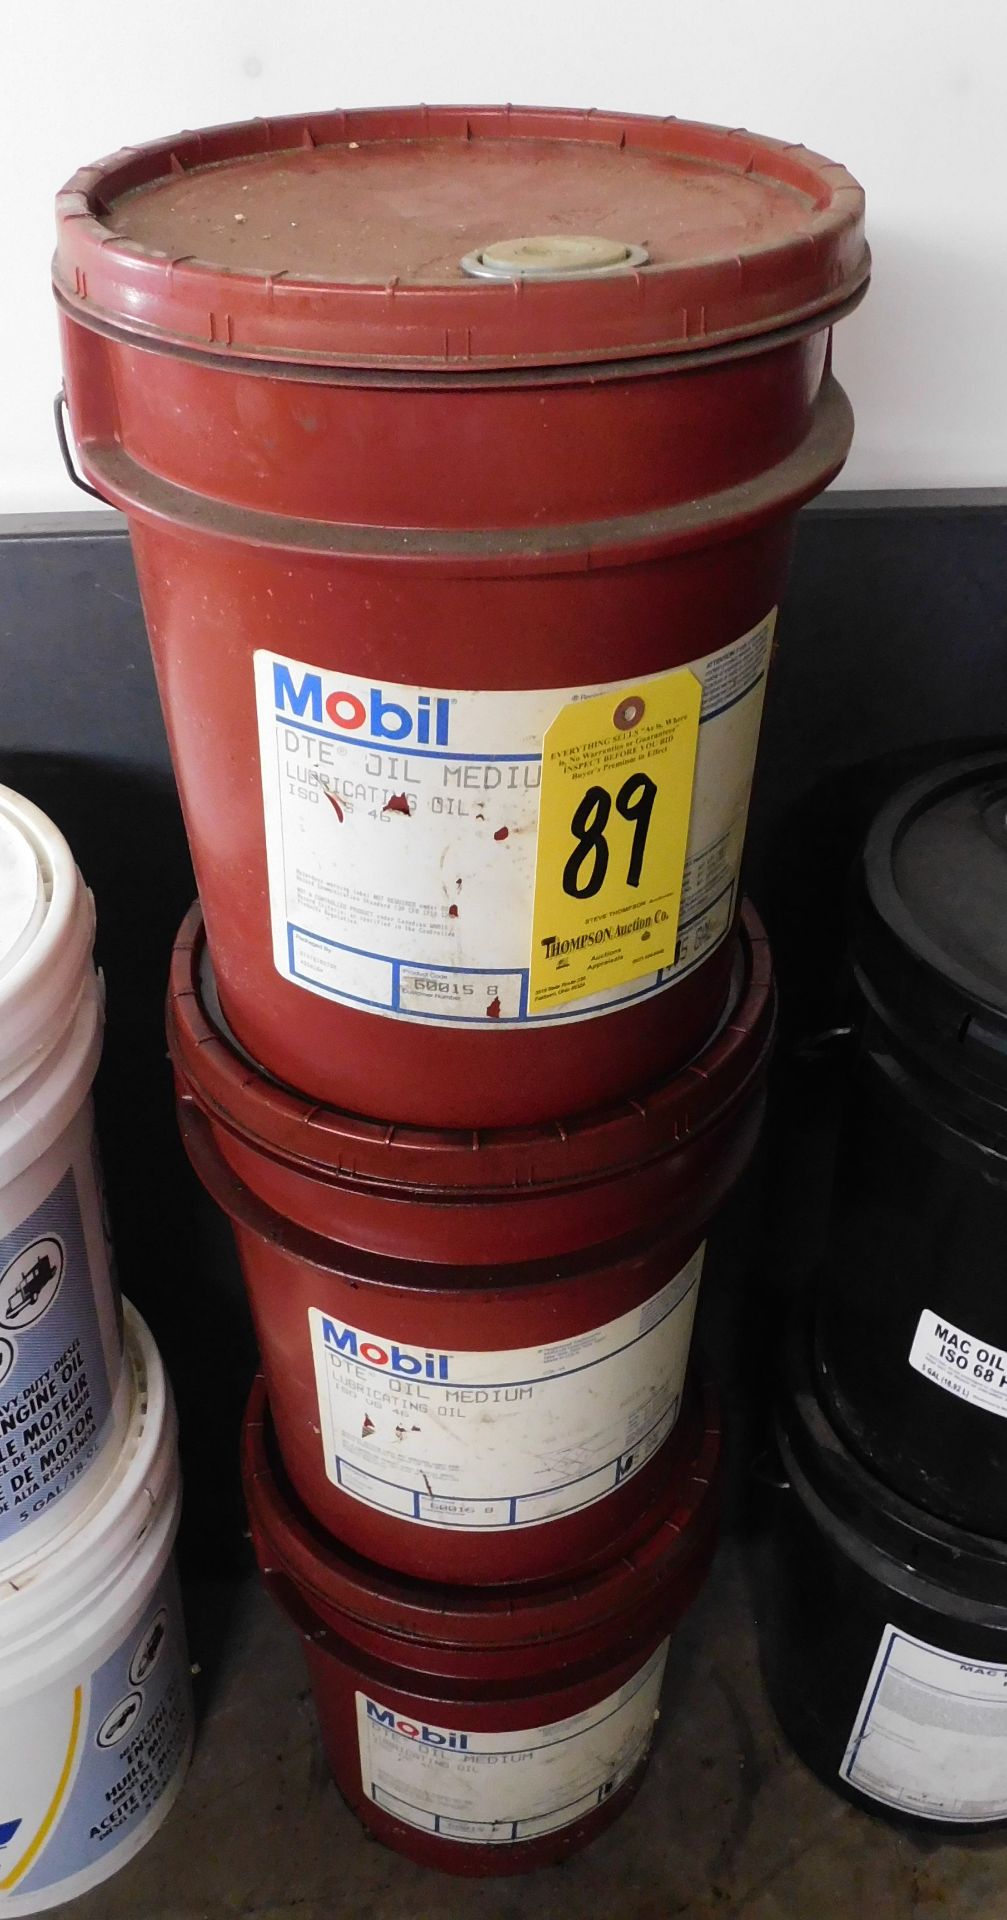 (3) 5 Gallon Pails of Mobil DTE Oil Medium